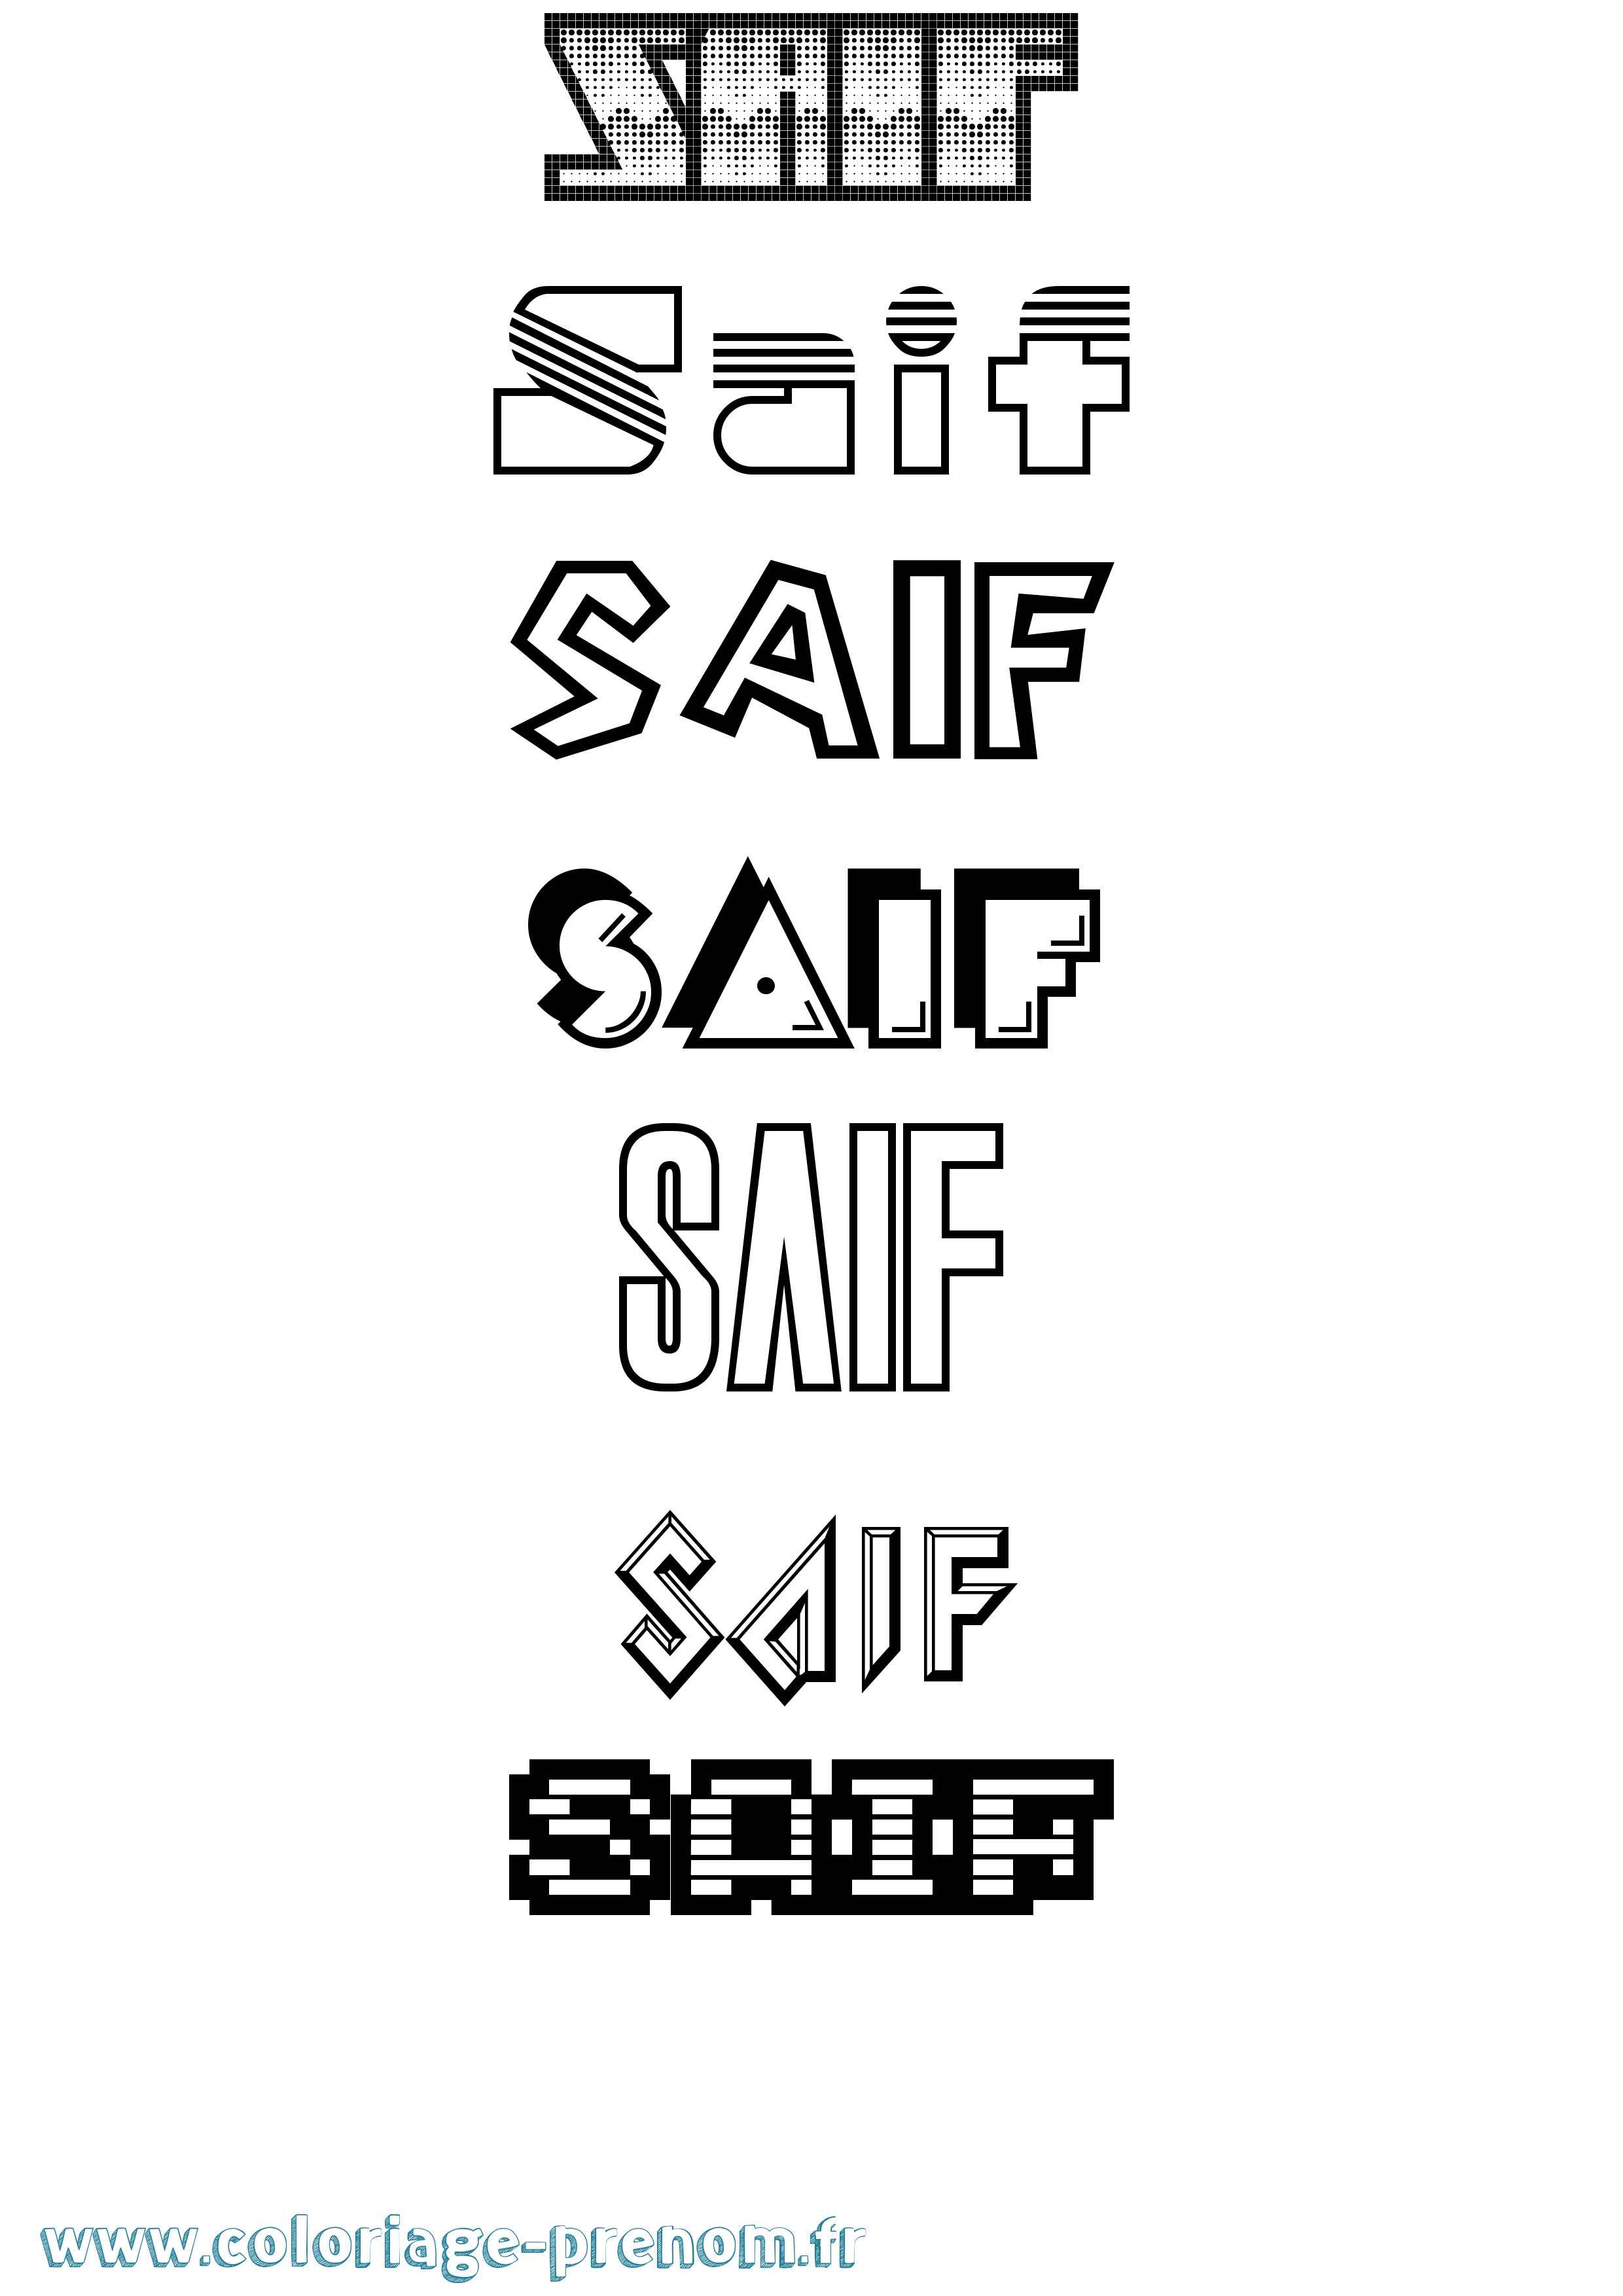 Coloriage prénom Saif Jeux Vidéos